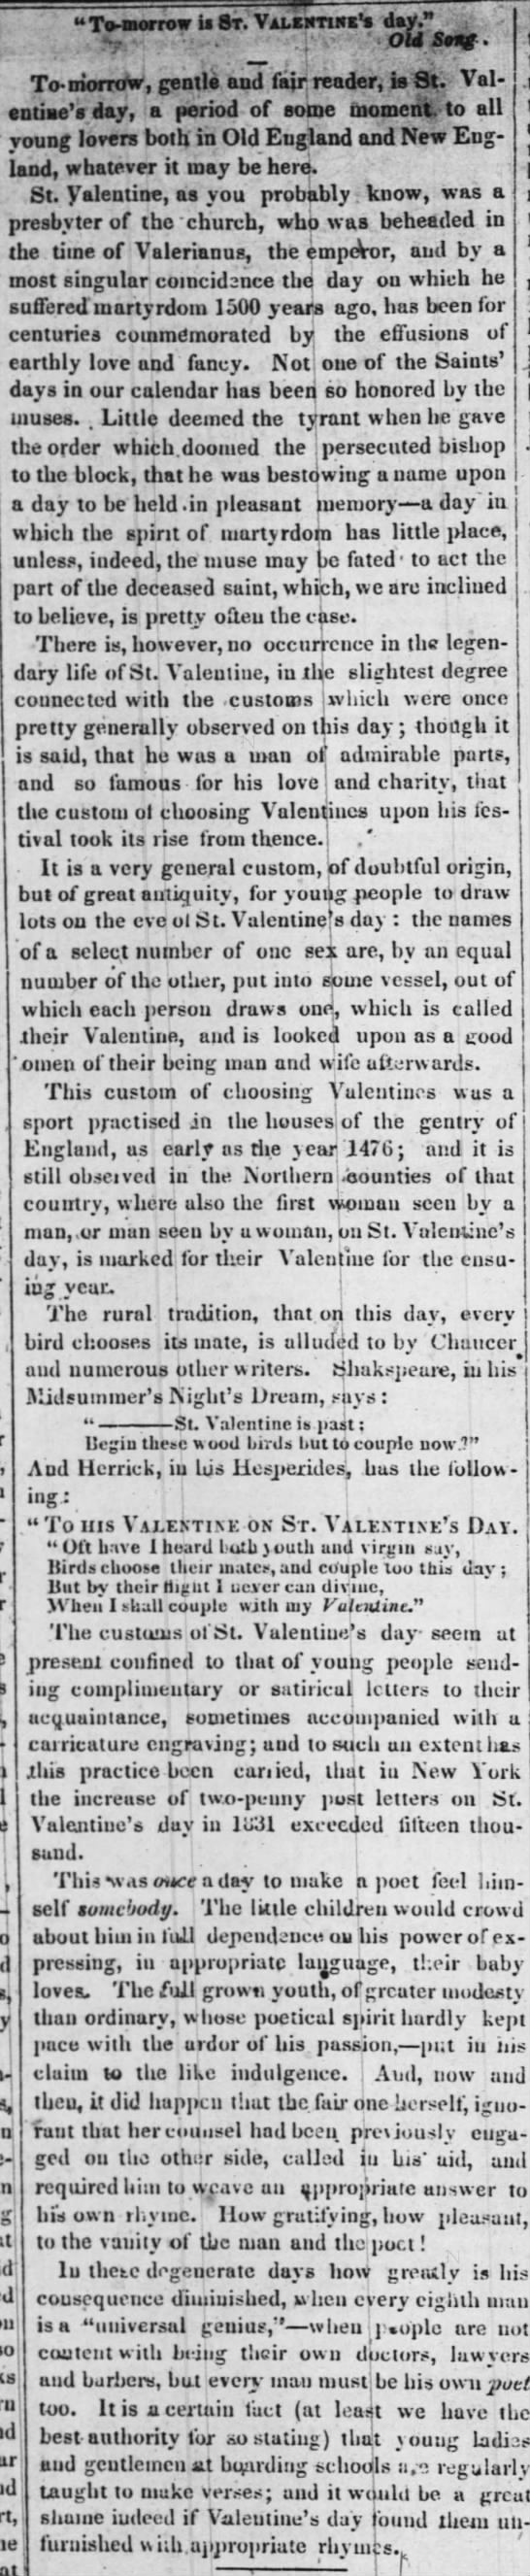 Valentine's customs revealed in 1839 column. - 